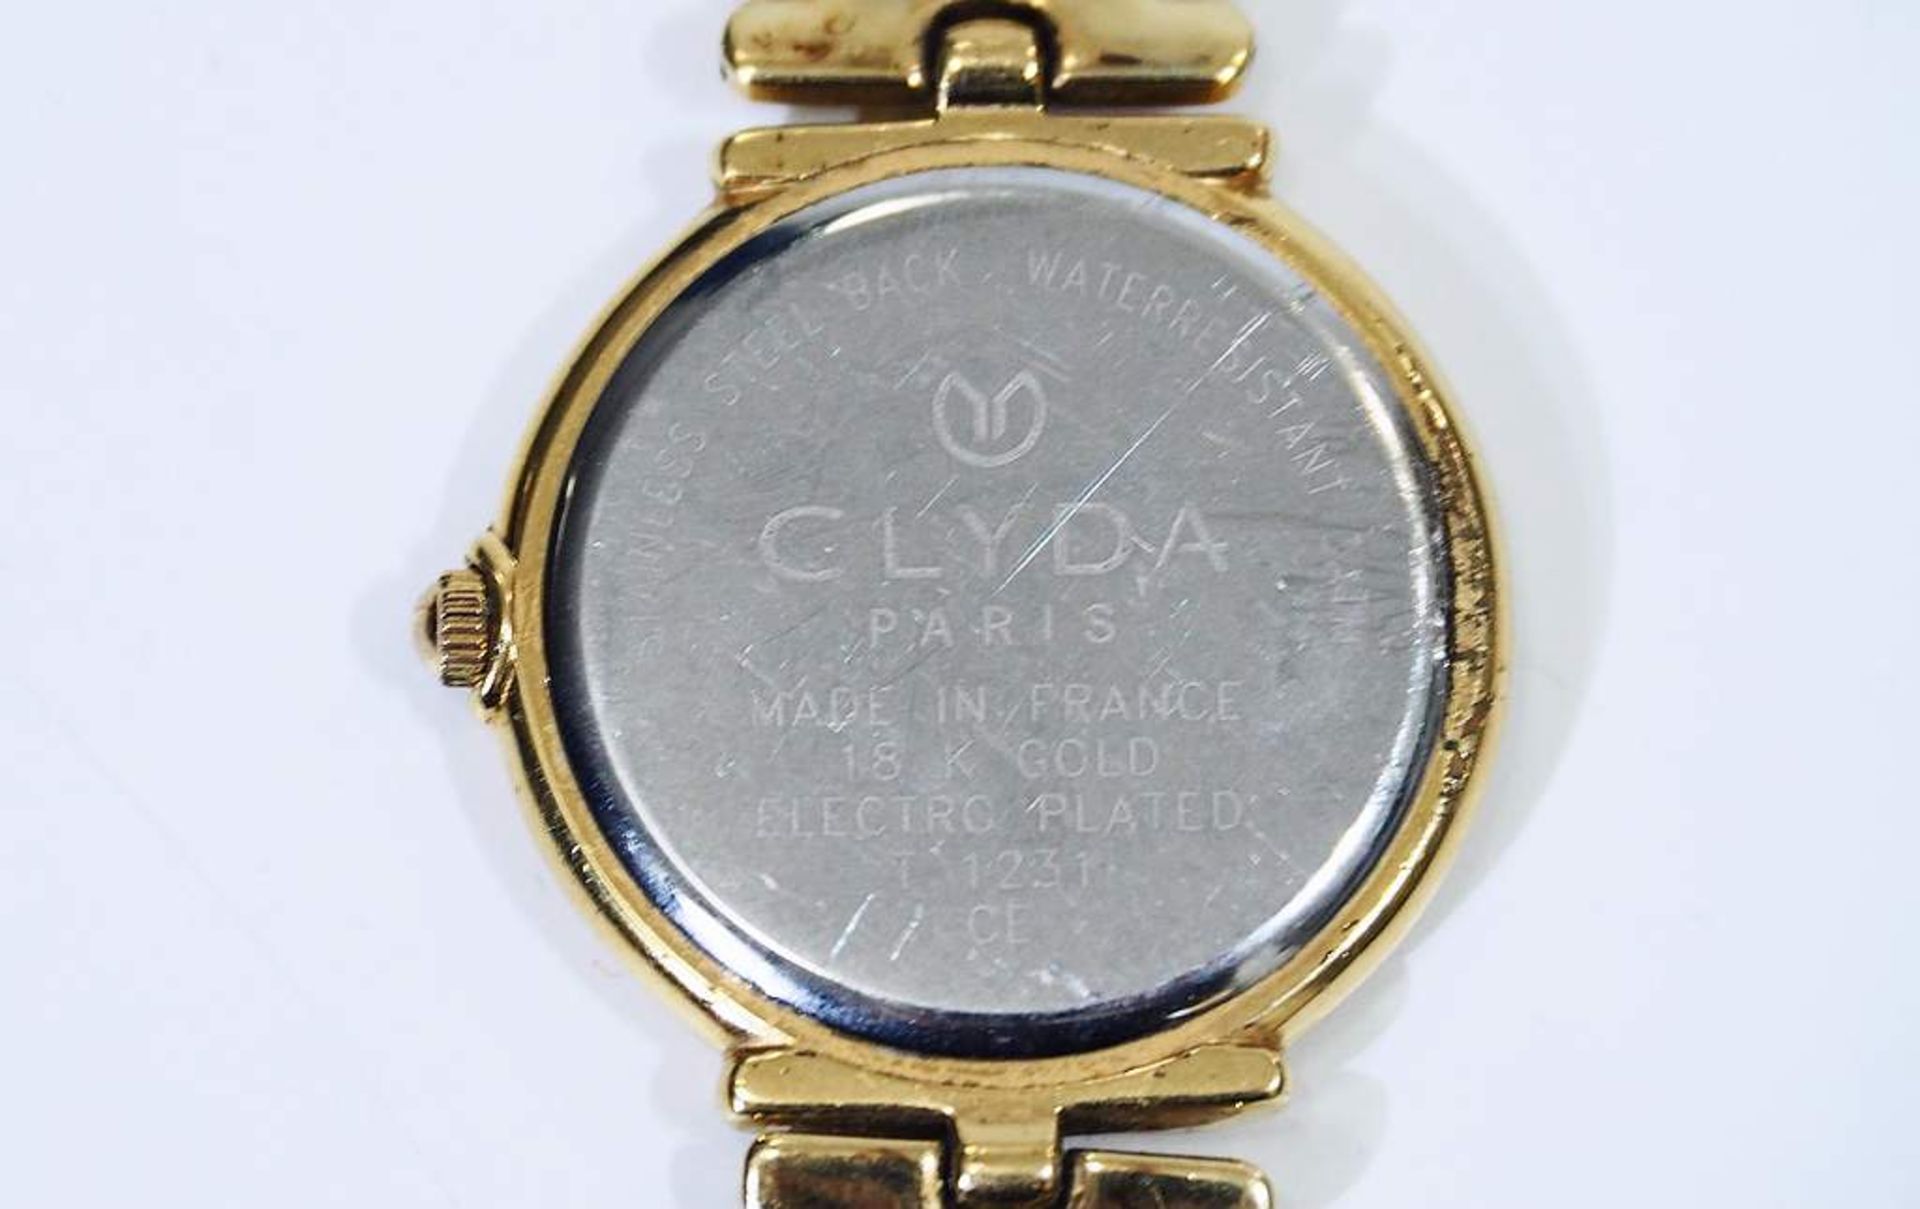 Gaddafi-Uhr. Zifferblatt bezeichnet CLYDA/Paris.Gaddafi-Uhr. Zifferblatt bezeichnet CLYDA/Paris, - Bild 5 aus 10